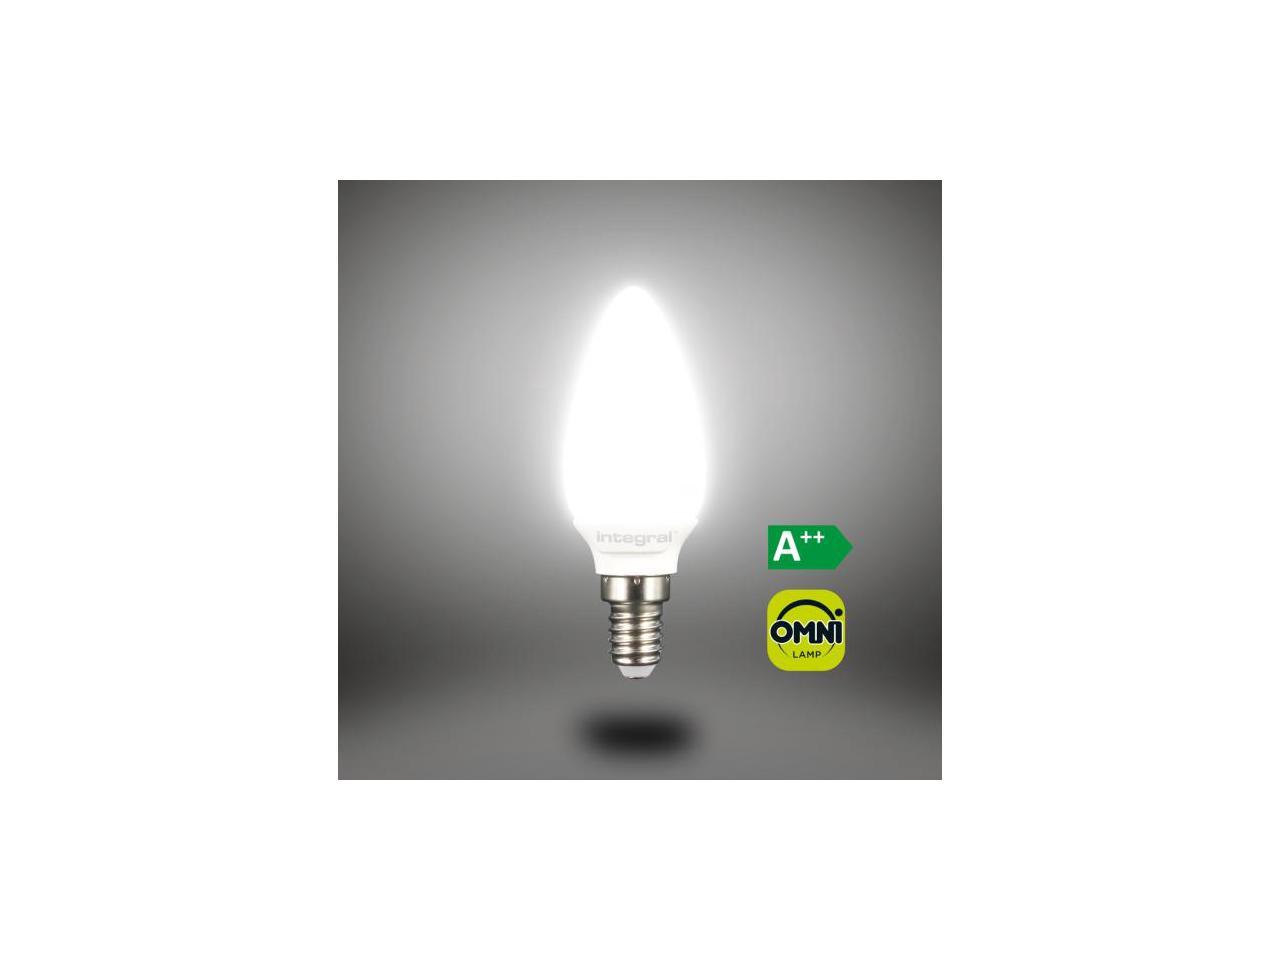 Integral LED Candle Omni-Lamp 2.9 Watts 25W 250lm E14 Socket Small Edison ILB35E14O2.9N03KHCWA